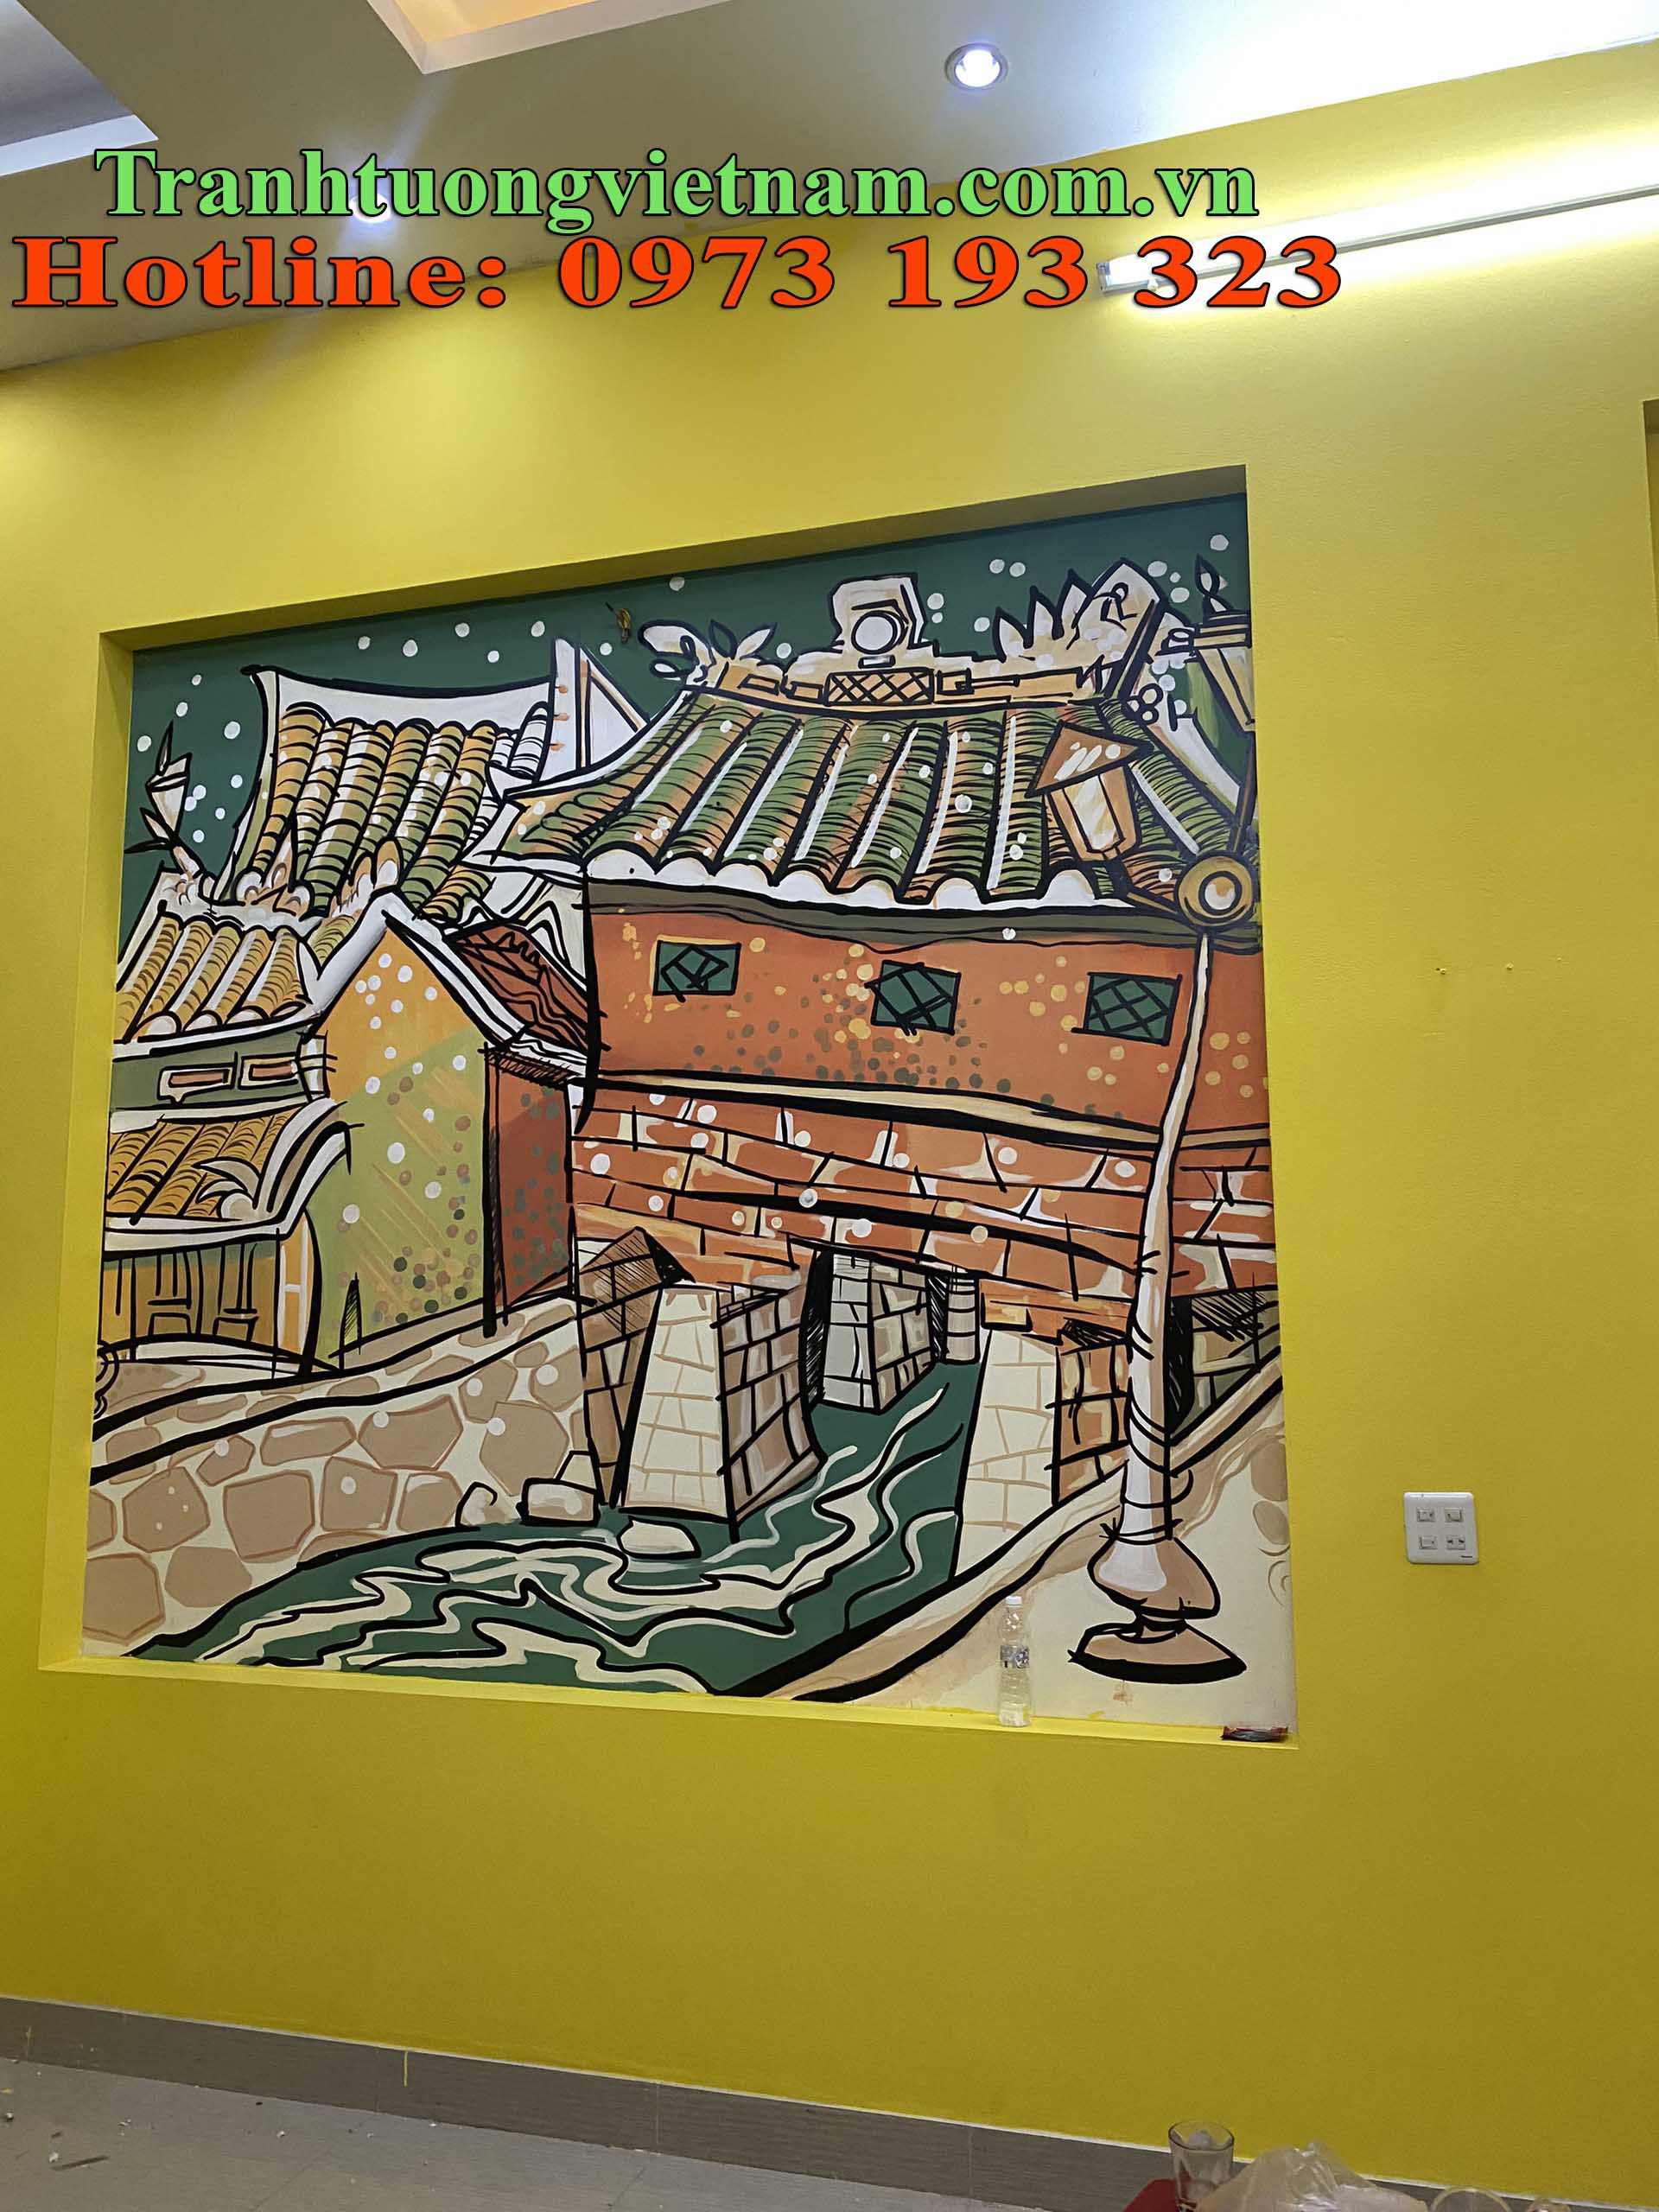 Hồ Chí Minh Người đặt nền móng cho nghệ thuật tranh cổ động Việt Nam